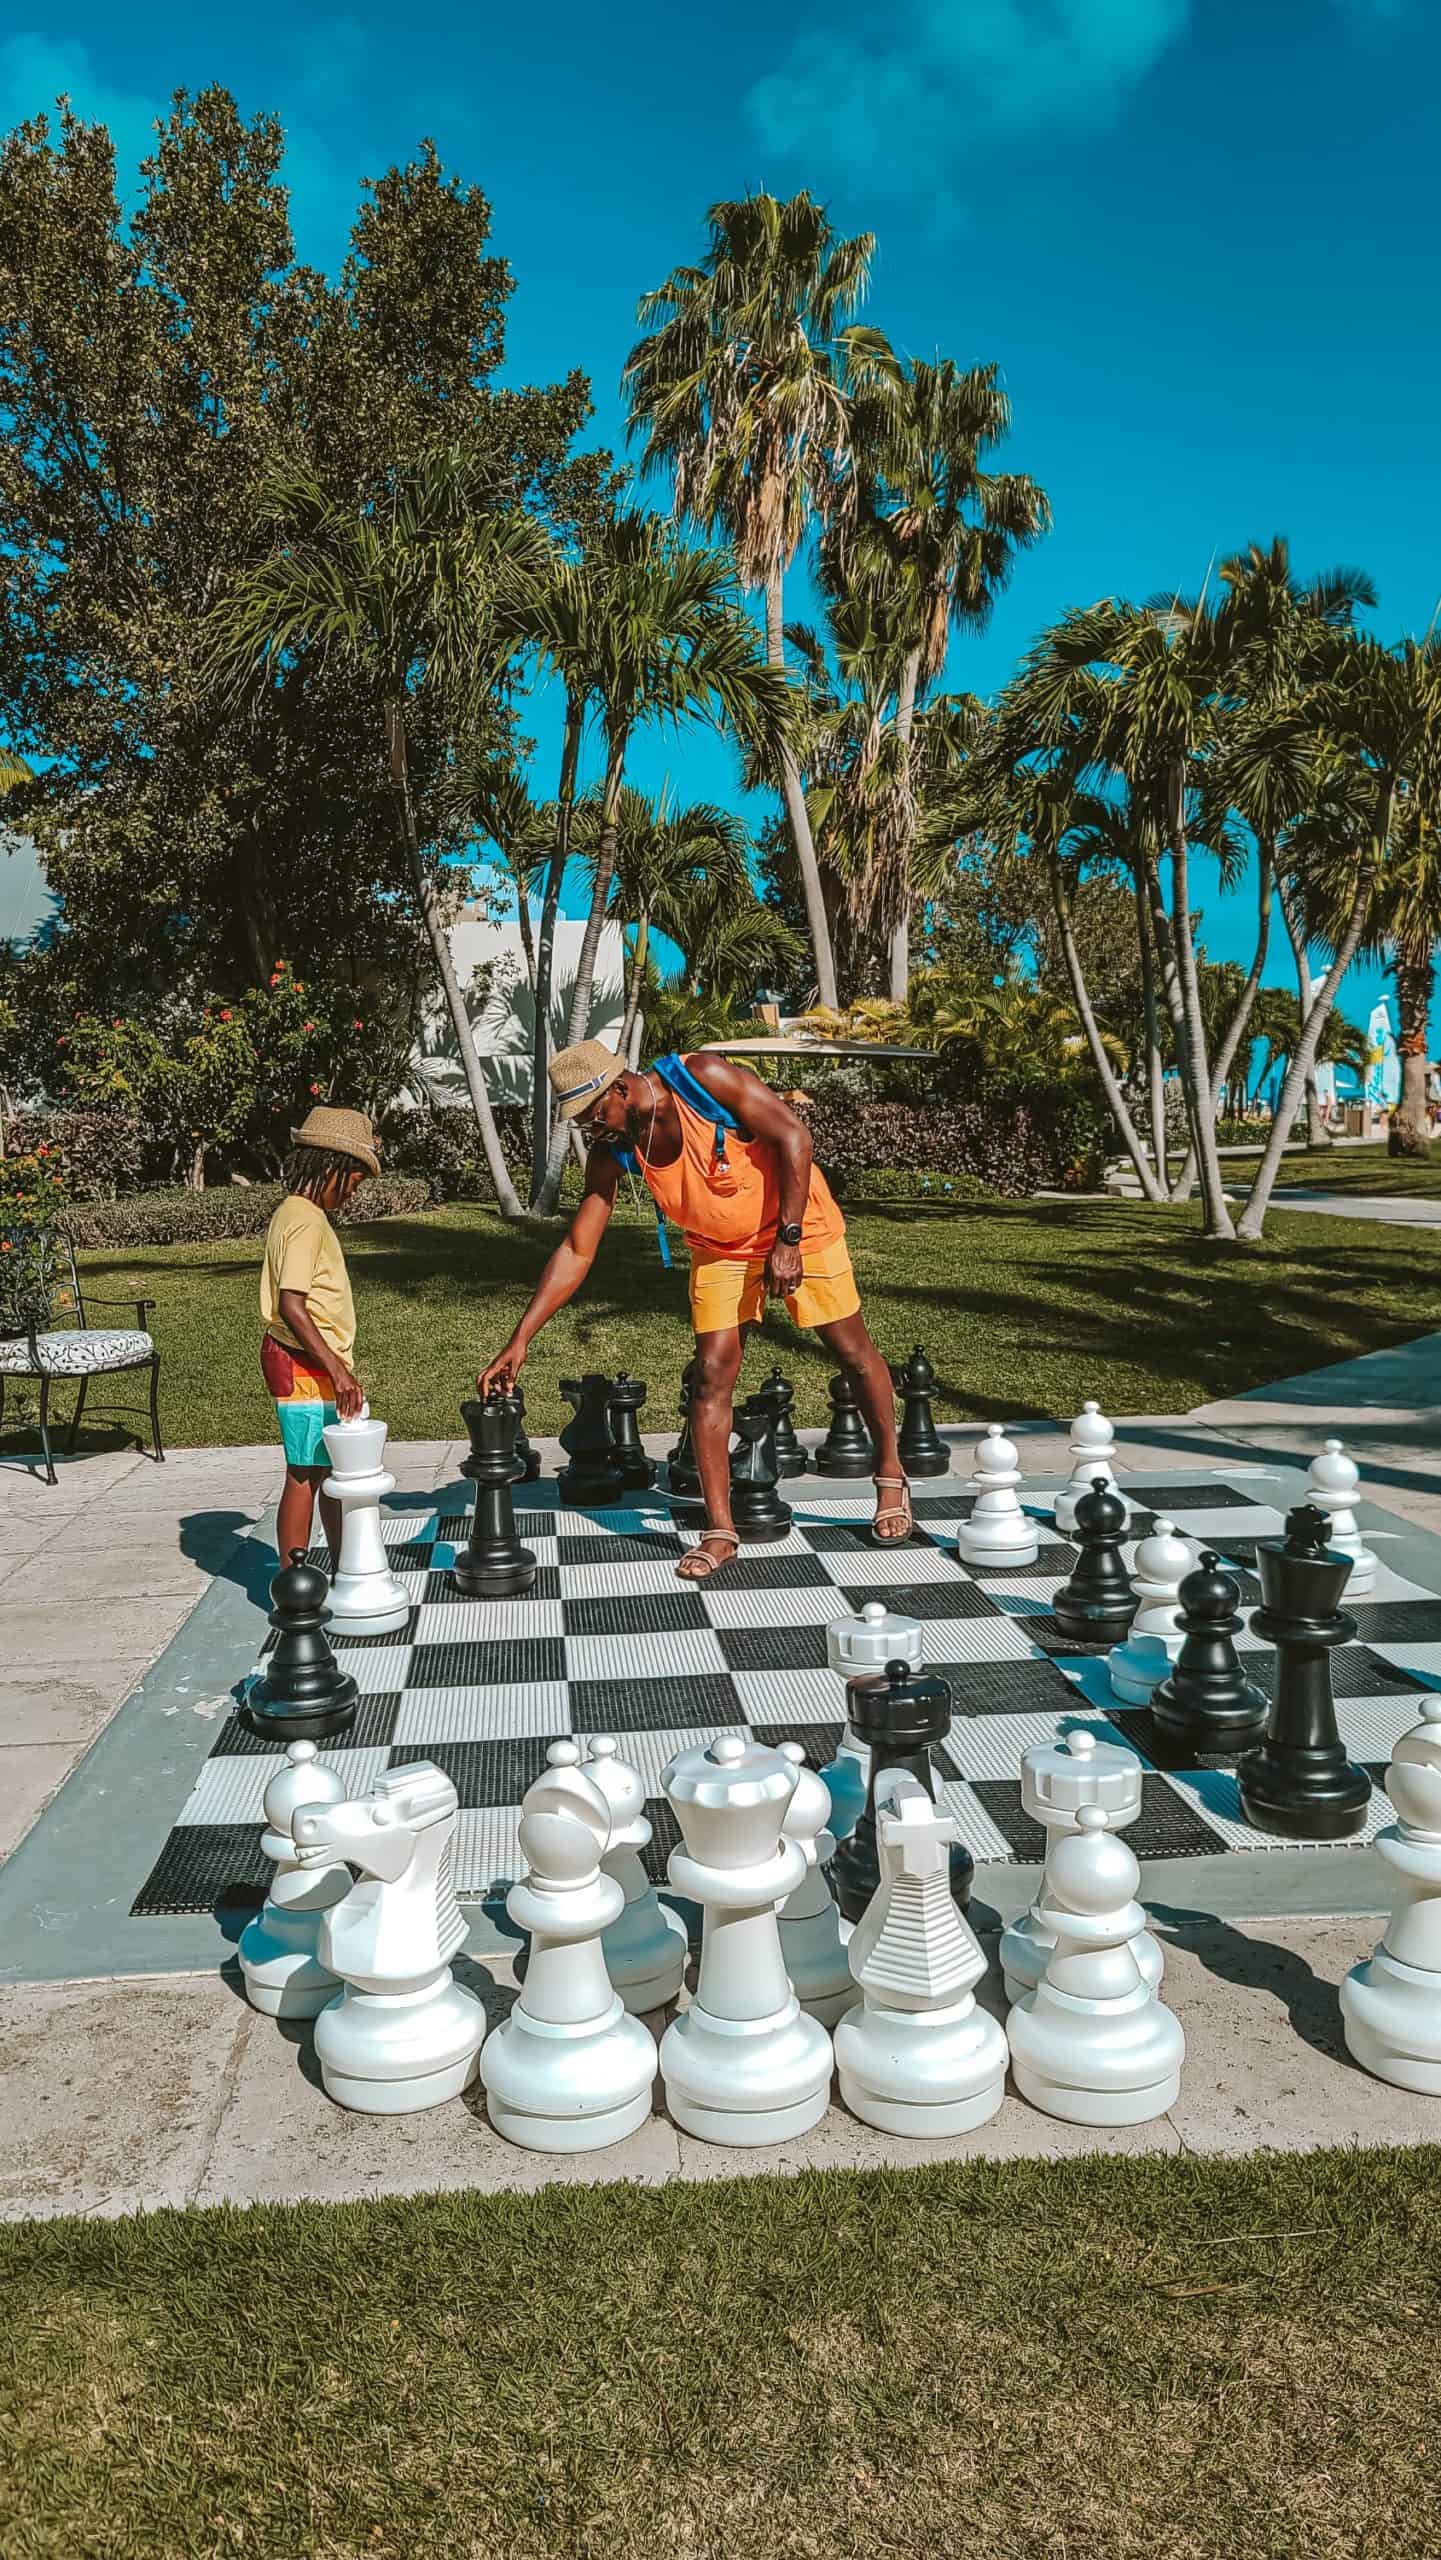 Beaches Resorts giant chess